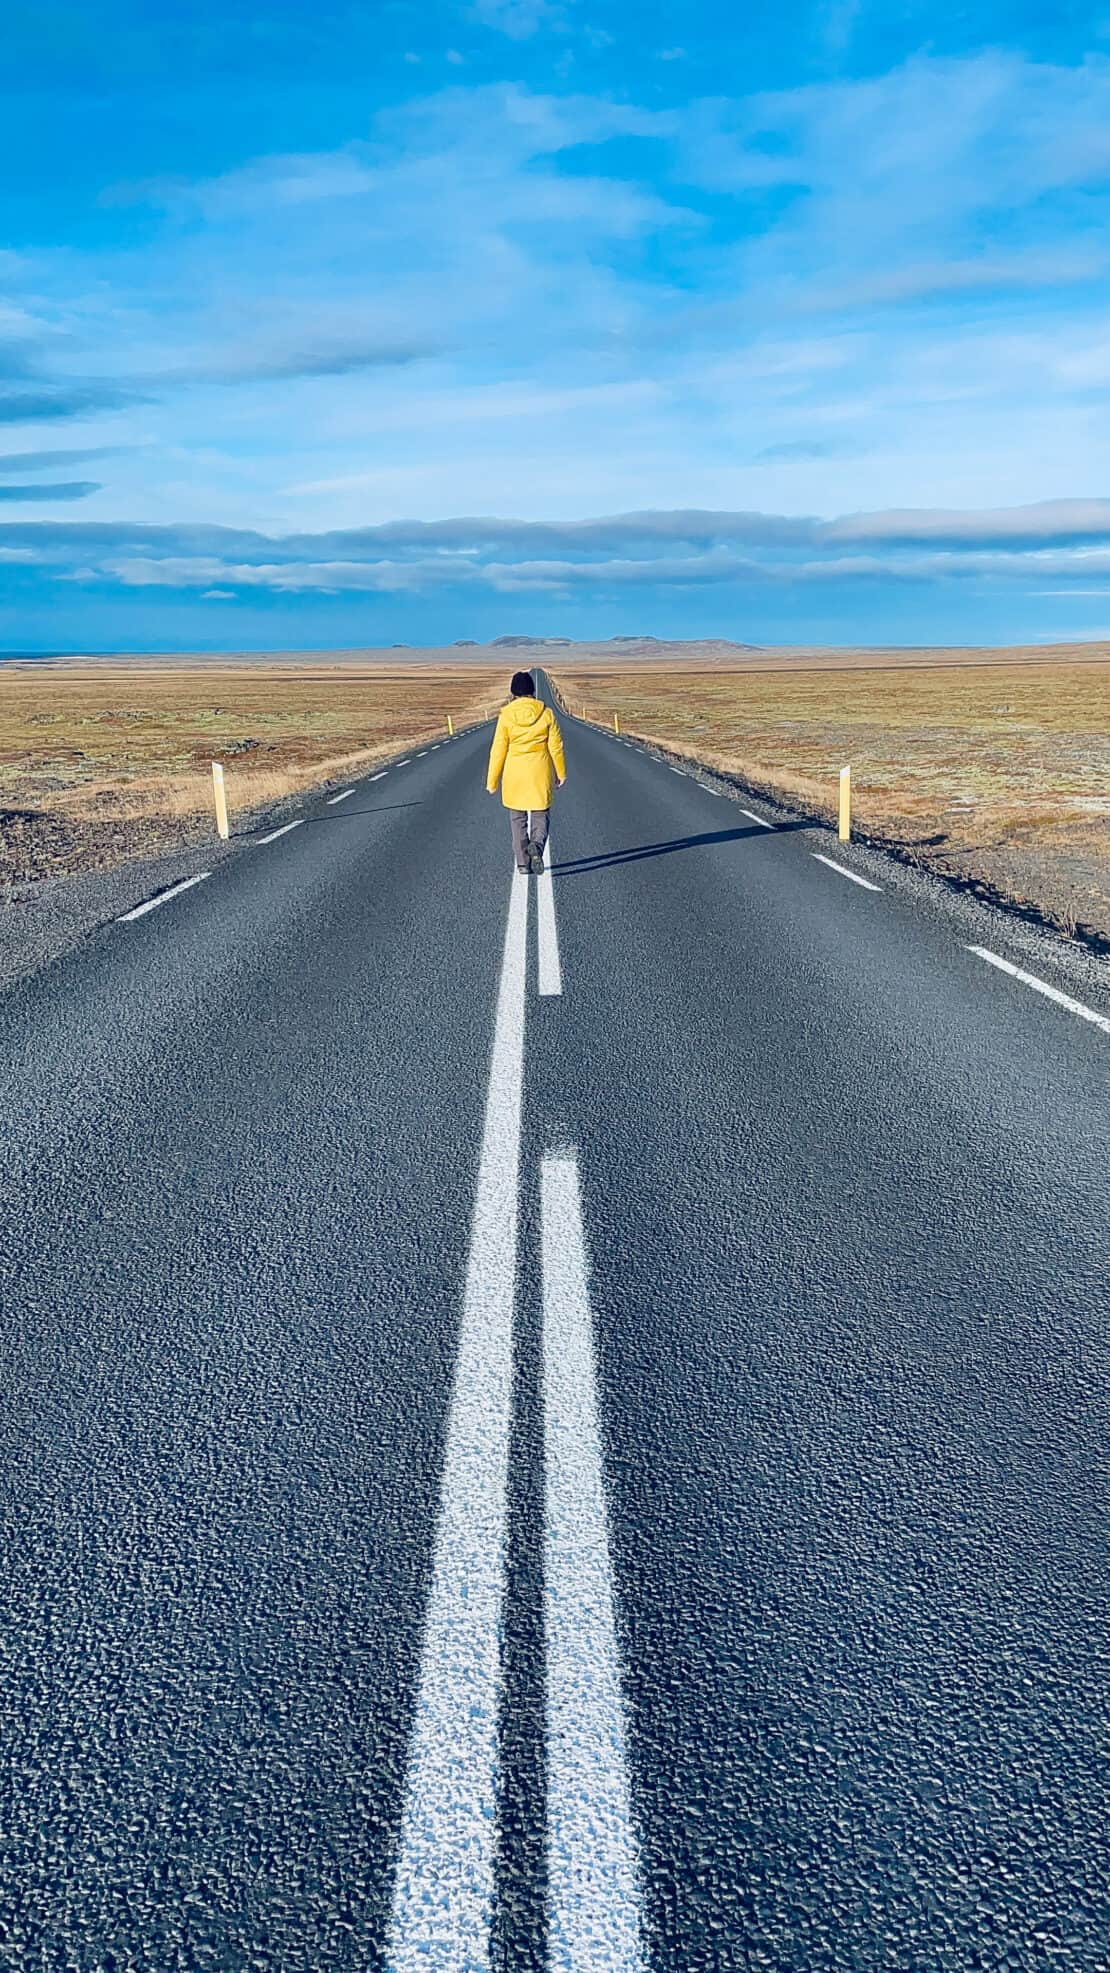 Abigail King walks along an empty road in Iceland